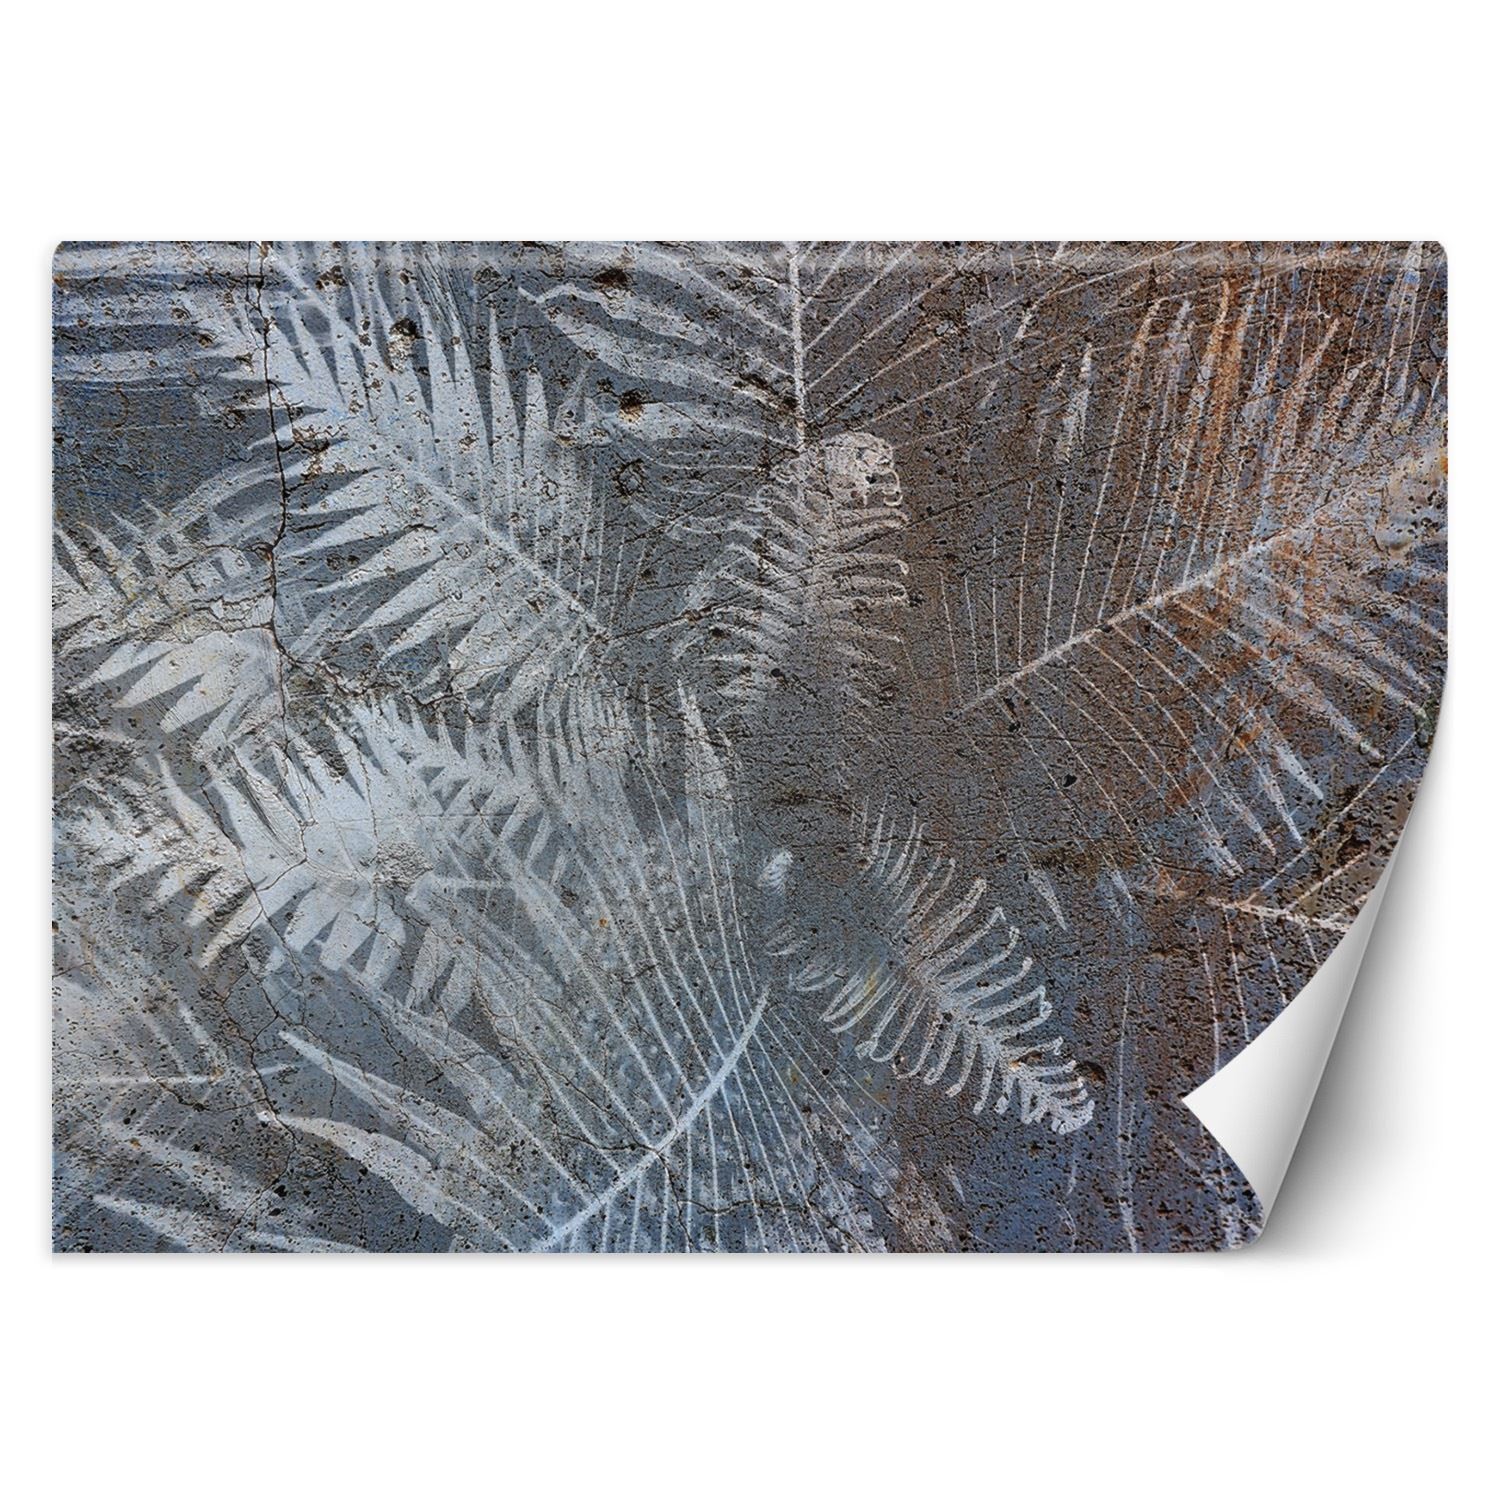 Trend24 – Behang – Palmblaadjes Op Beton – Vliesbehang – Behang Woonkamer – Fotobehang – 350x245x2 cm – Incl. behanglijm